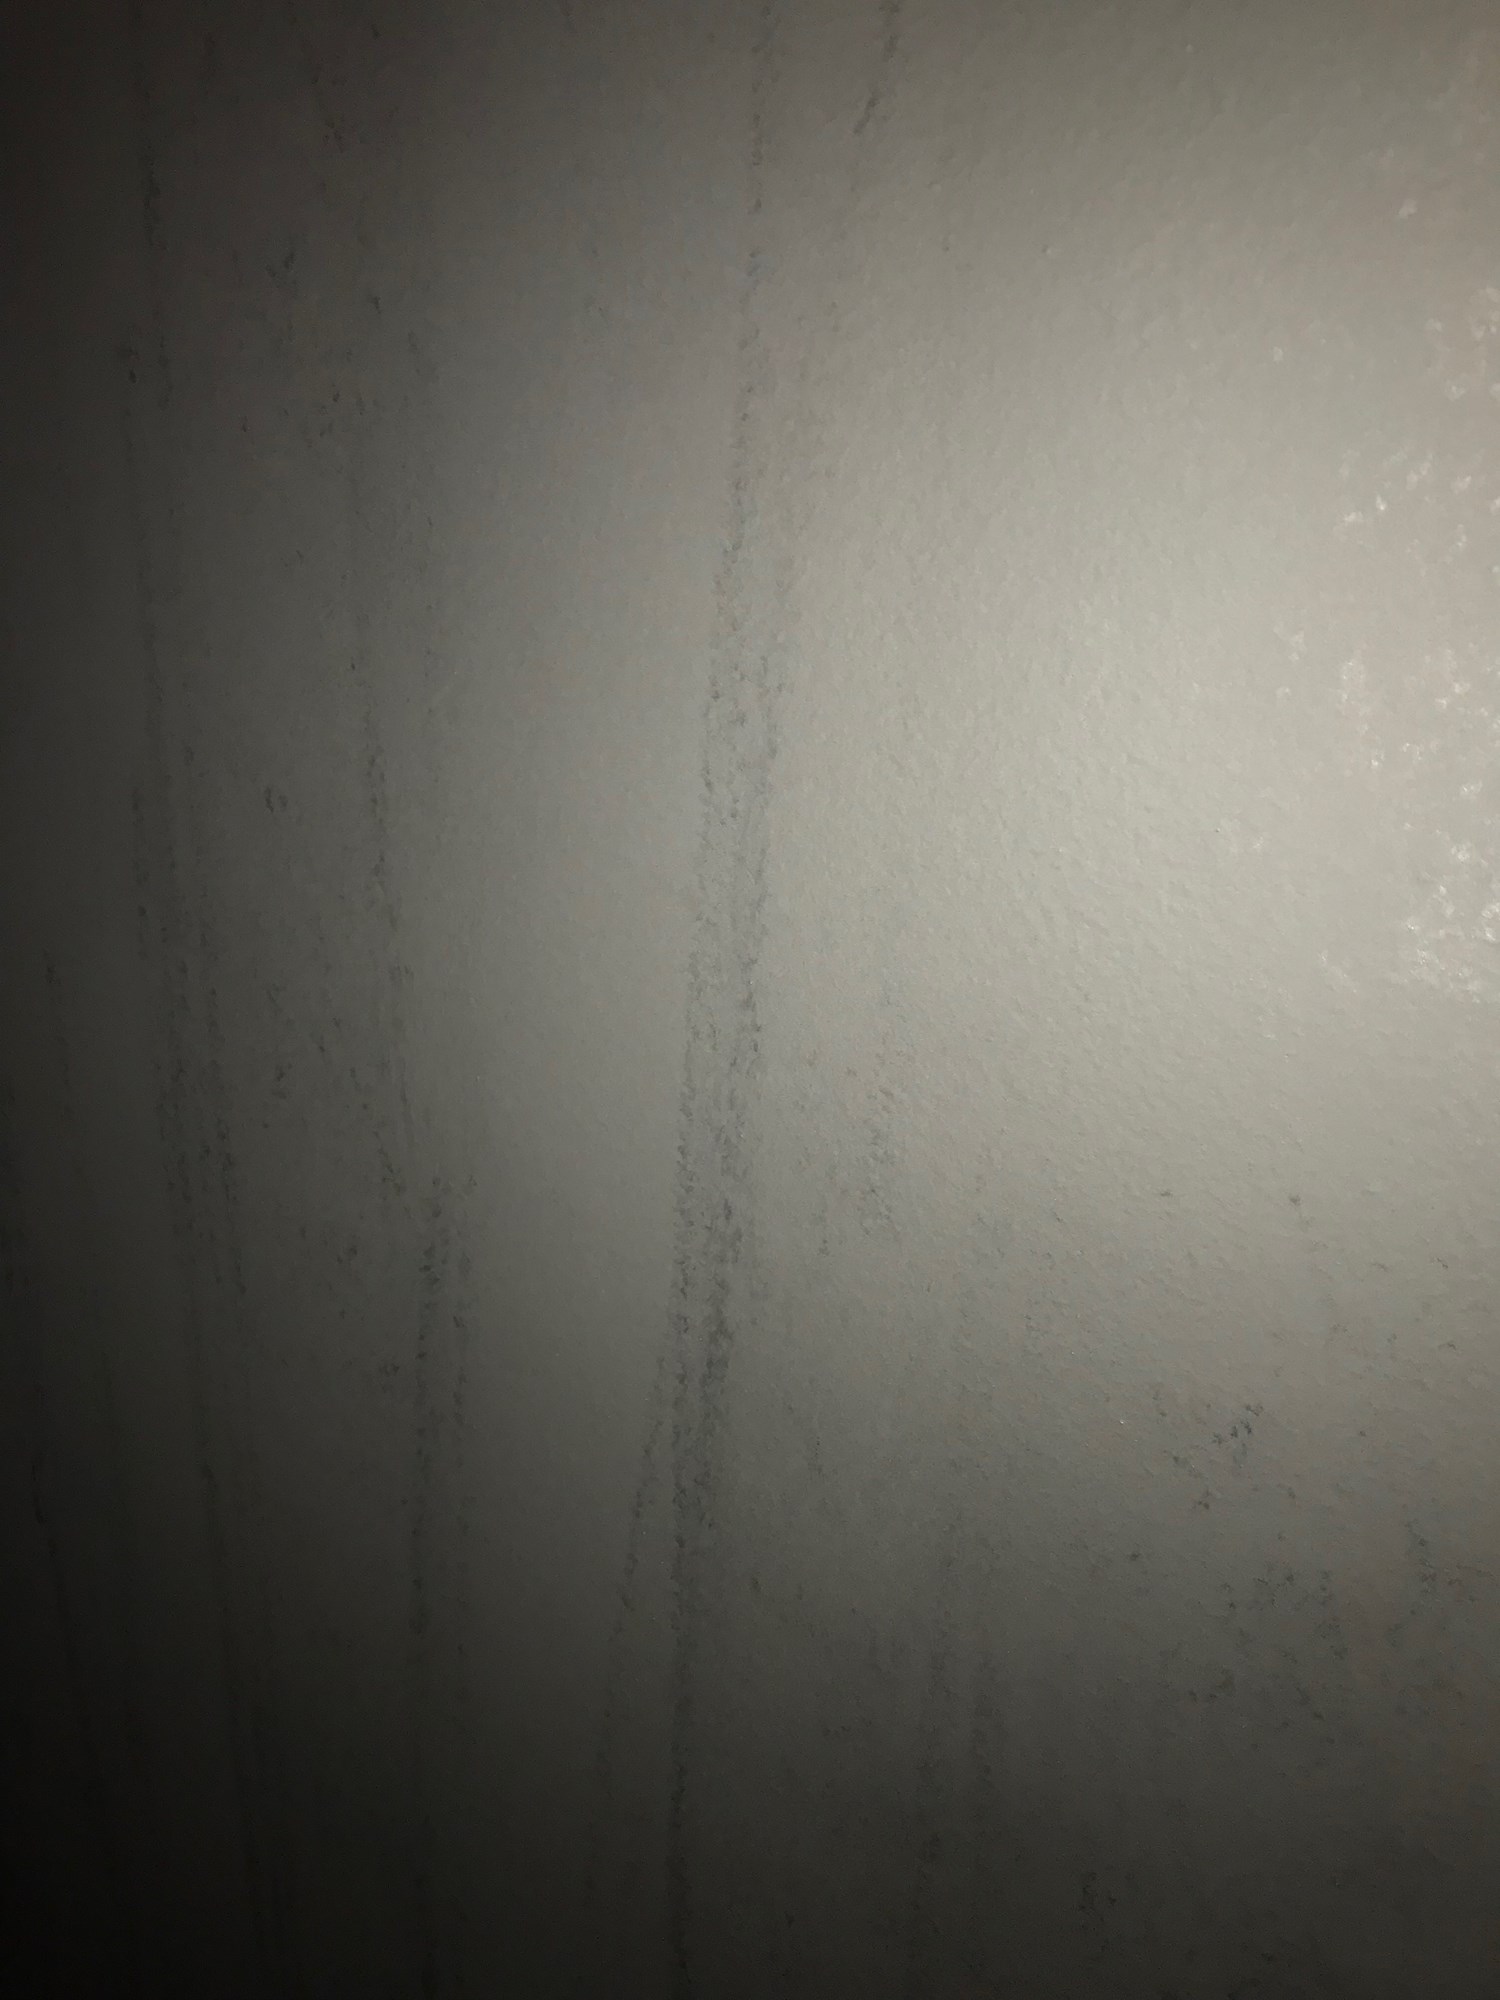 Svart maling på vegg får skjolder og flekkar - IMG-1531.JPG - sinkjo